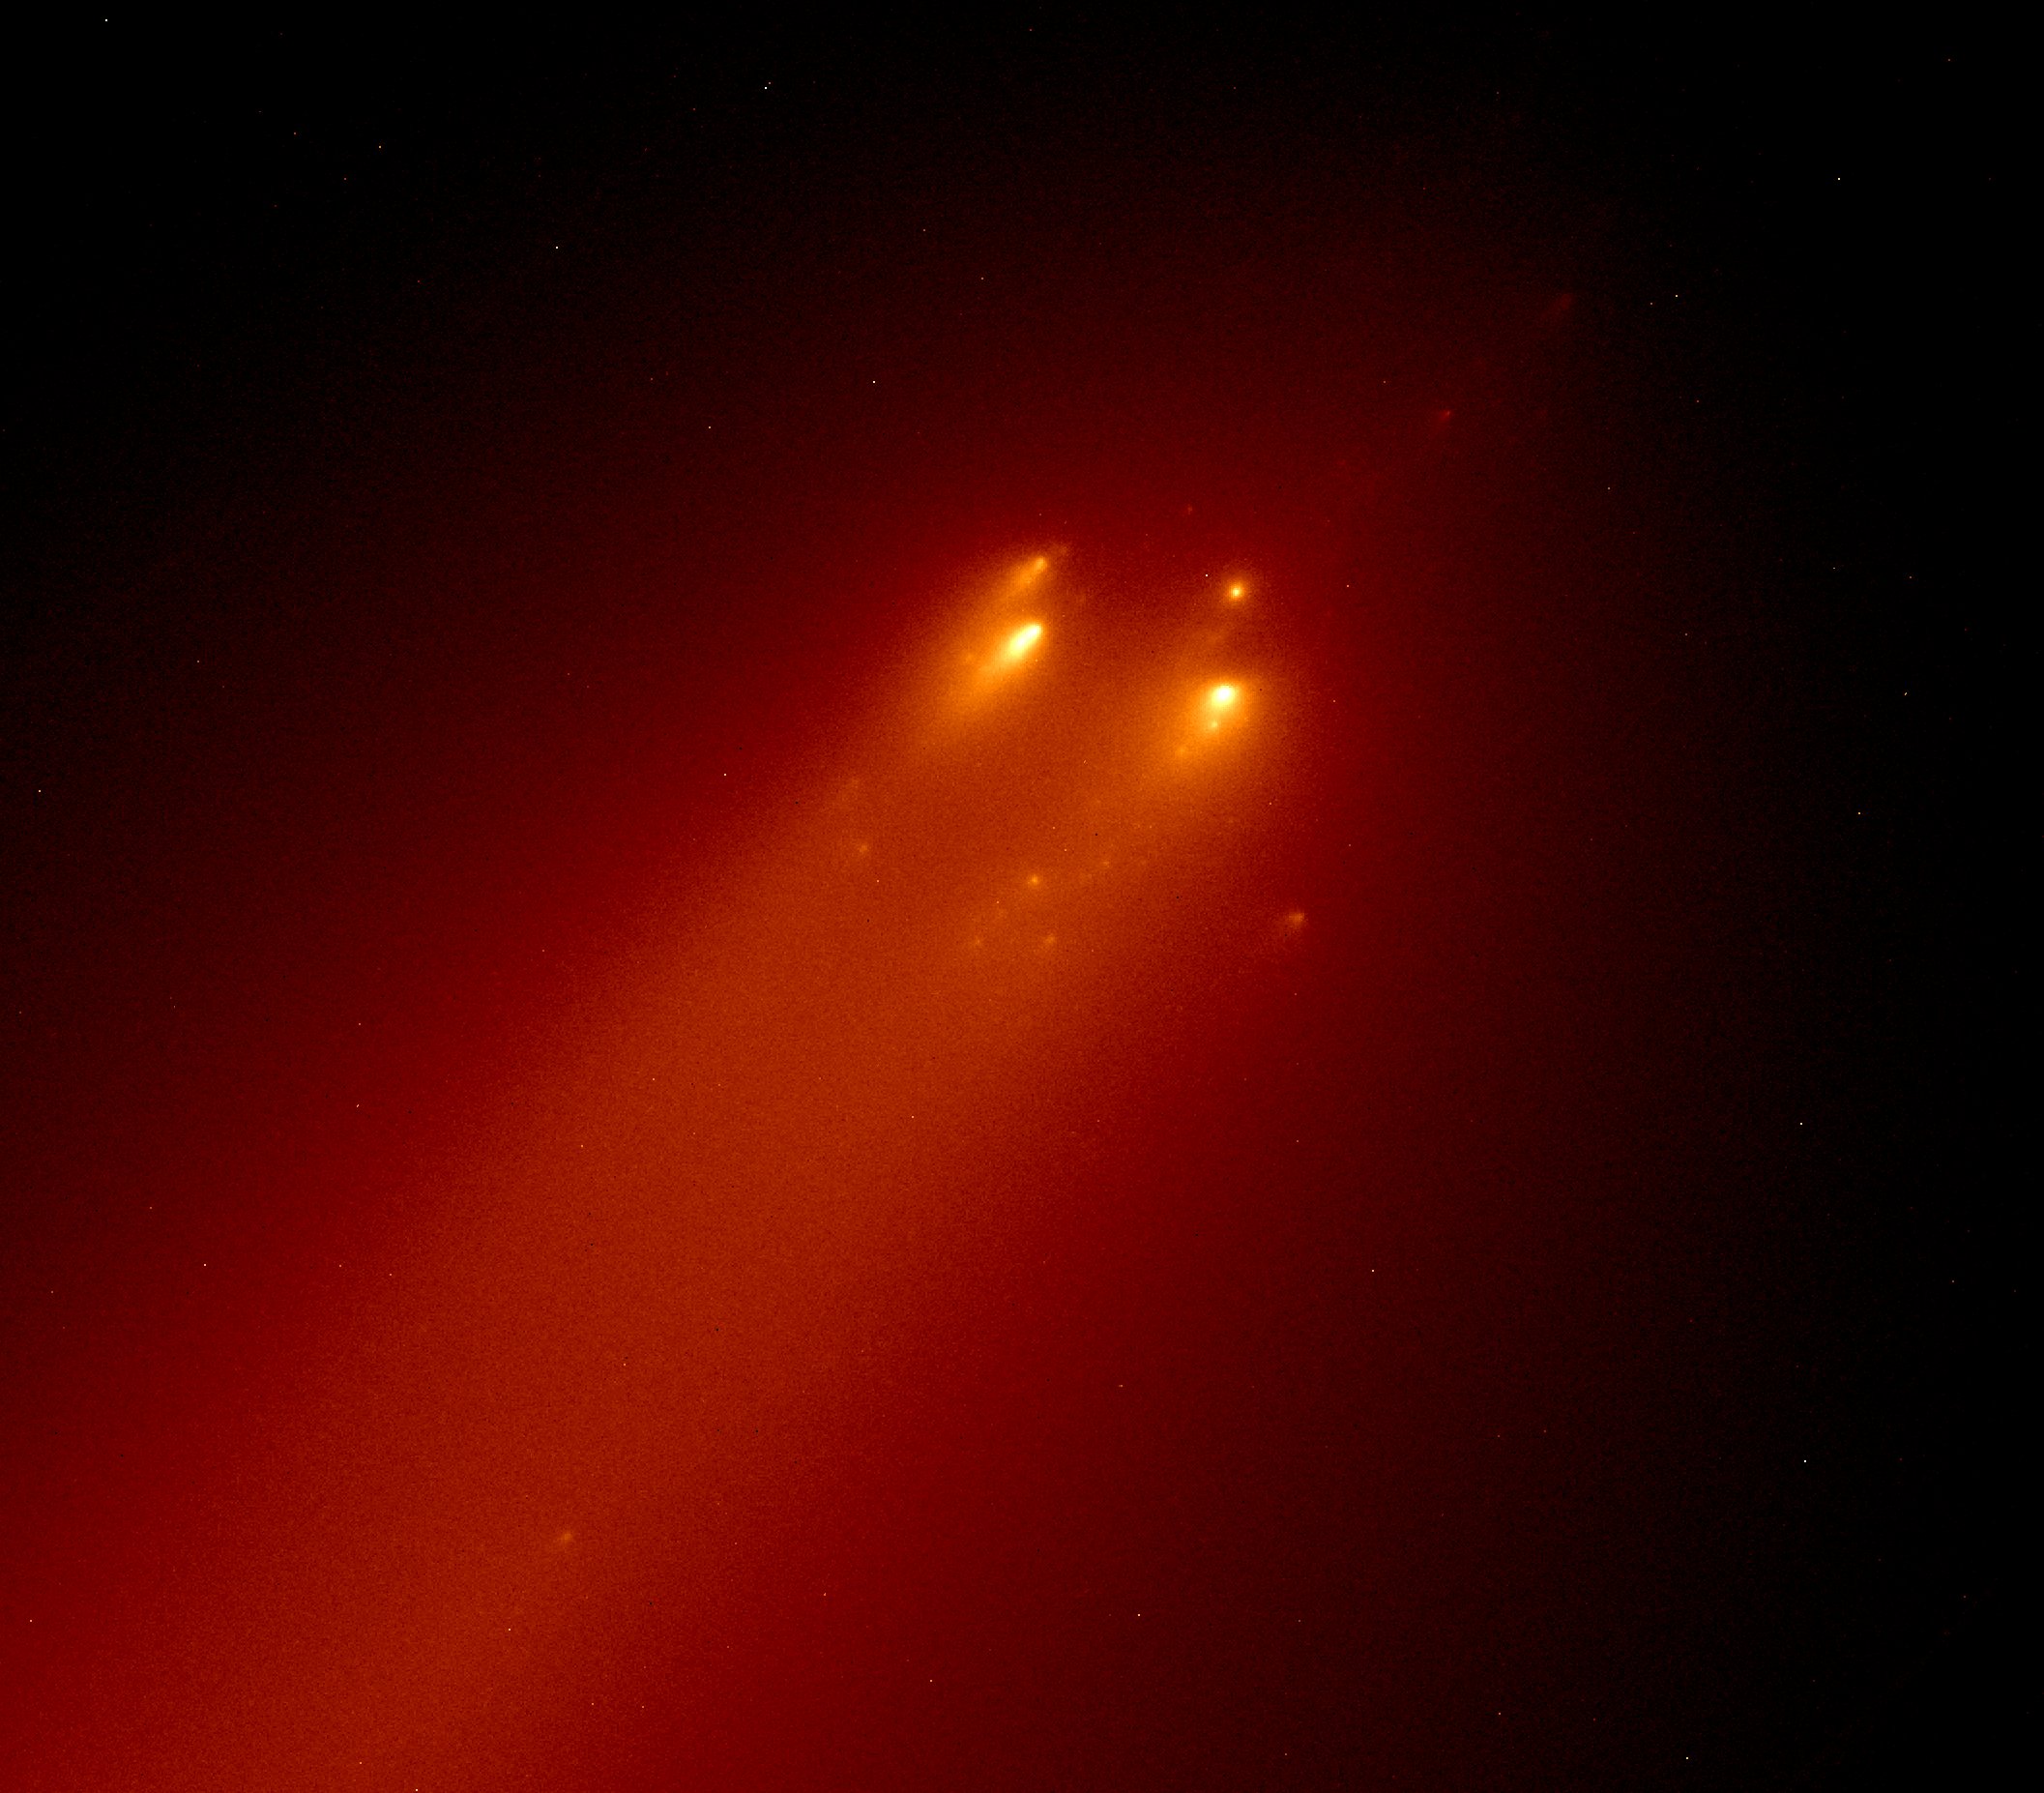  Detalle de los fragmentos del cometa C/2019 Y4 (ATLAS) observado mediante el Telescopio Espacial Hubble el 20 de Abril de 2020 (David Hewitt, HST, NASA, ESA).